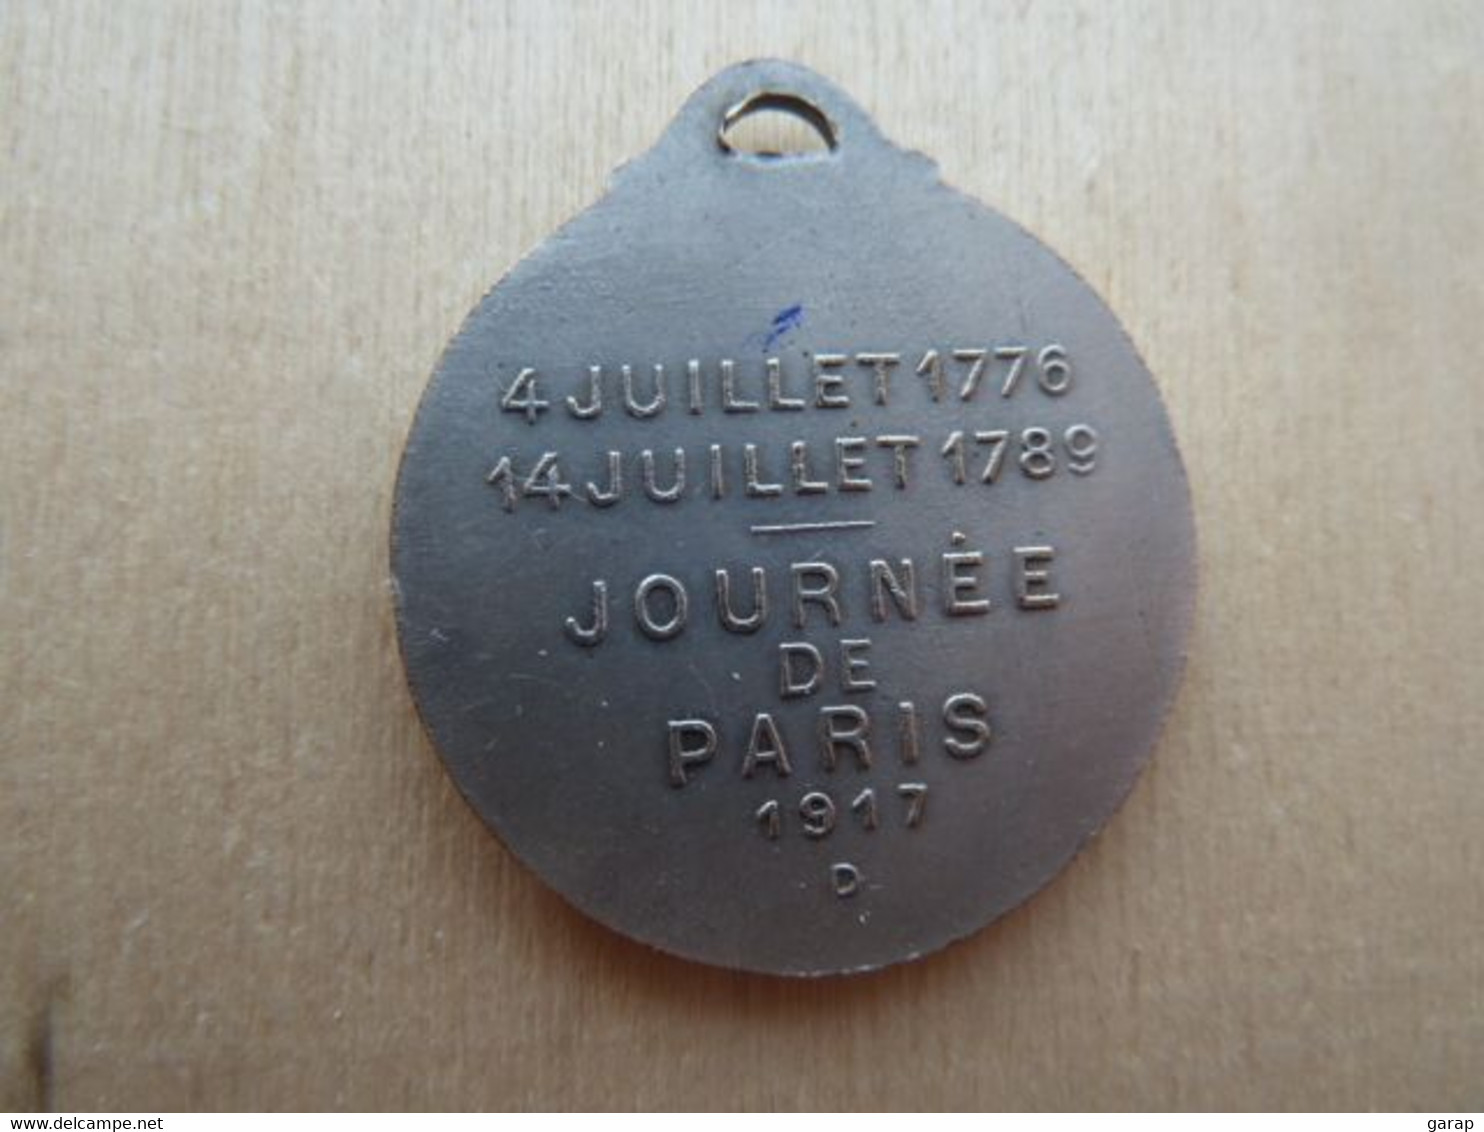 DA-126 Médaille Métal Gris Washington Lafayette Signée Gaston Lavrillier Paris -art.Journées De Paris 1917 - Zeitschriften & Kataloge